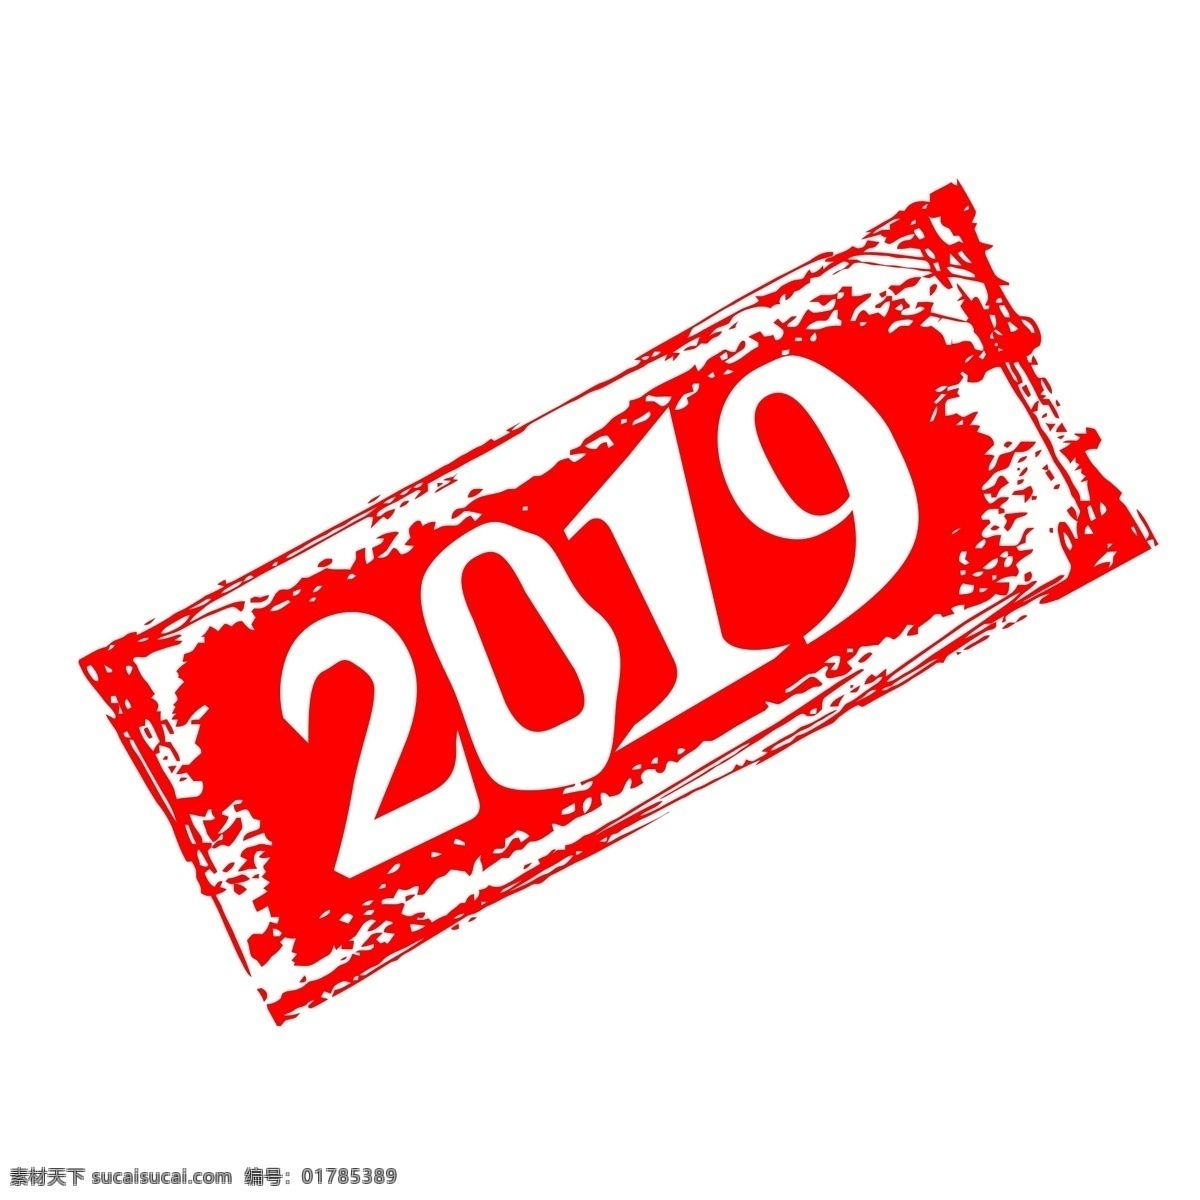 红色 印章 2019 迎新 年 宣传 文字 边框 古风 中式 水墨